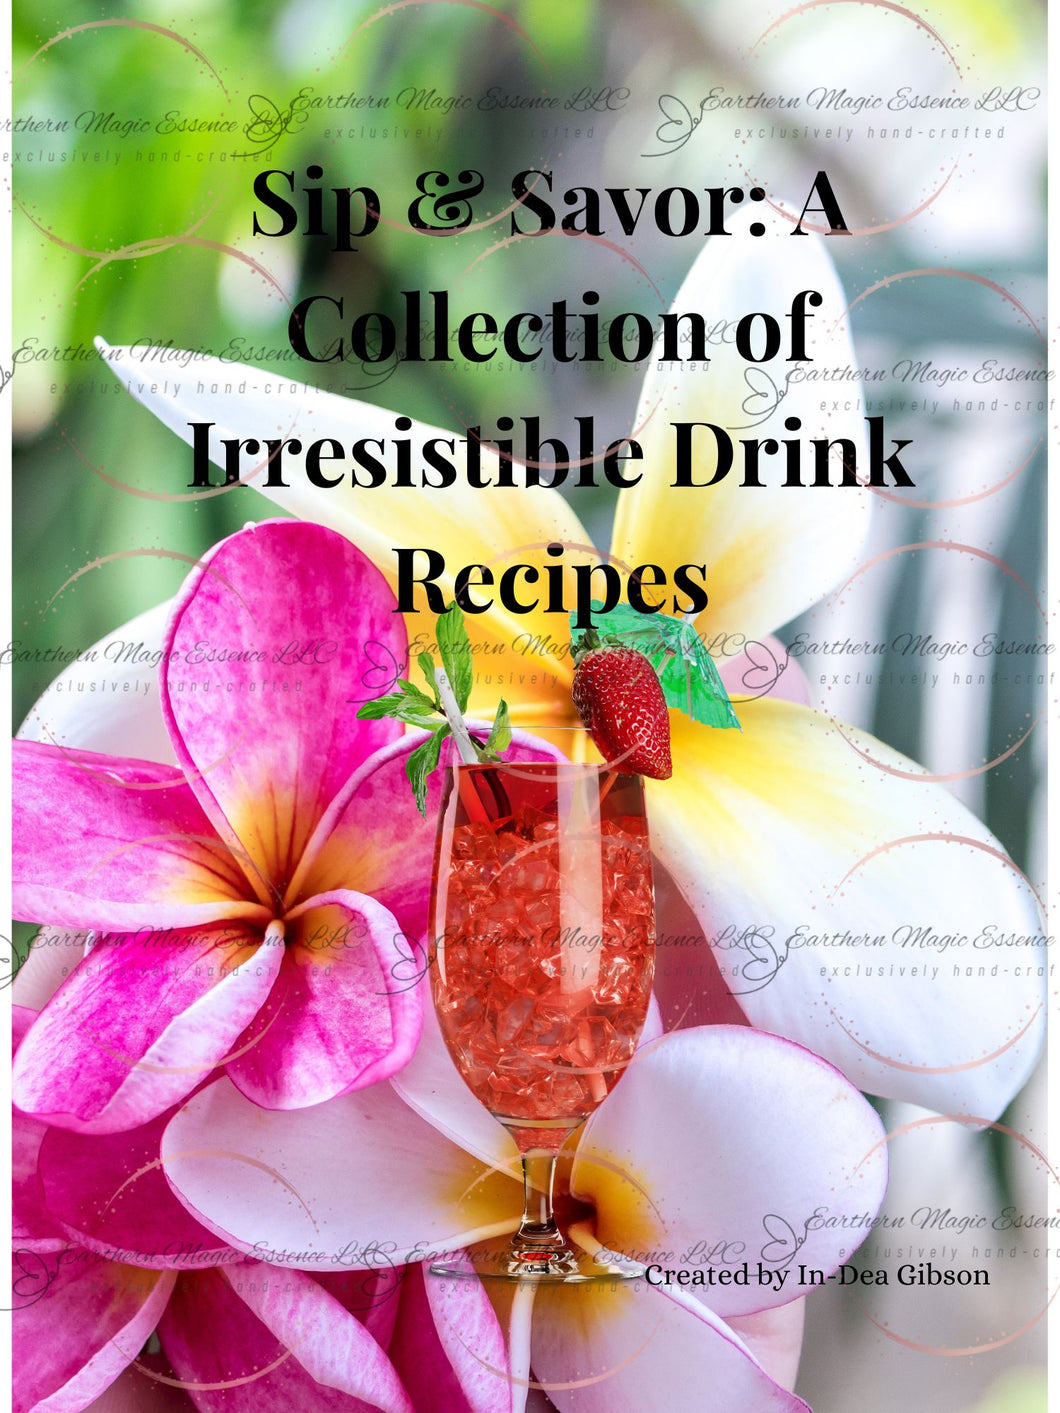 Sip & Savor drink recipes